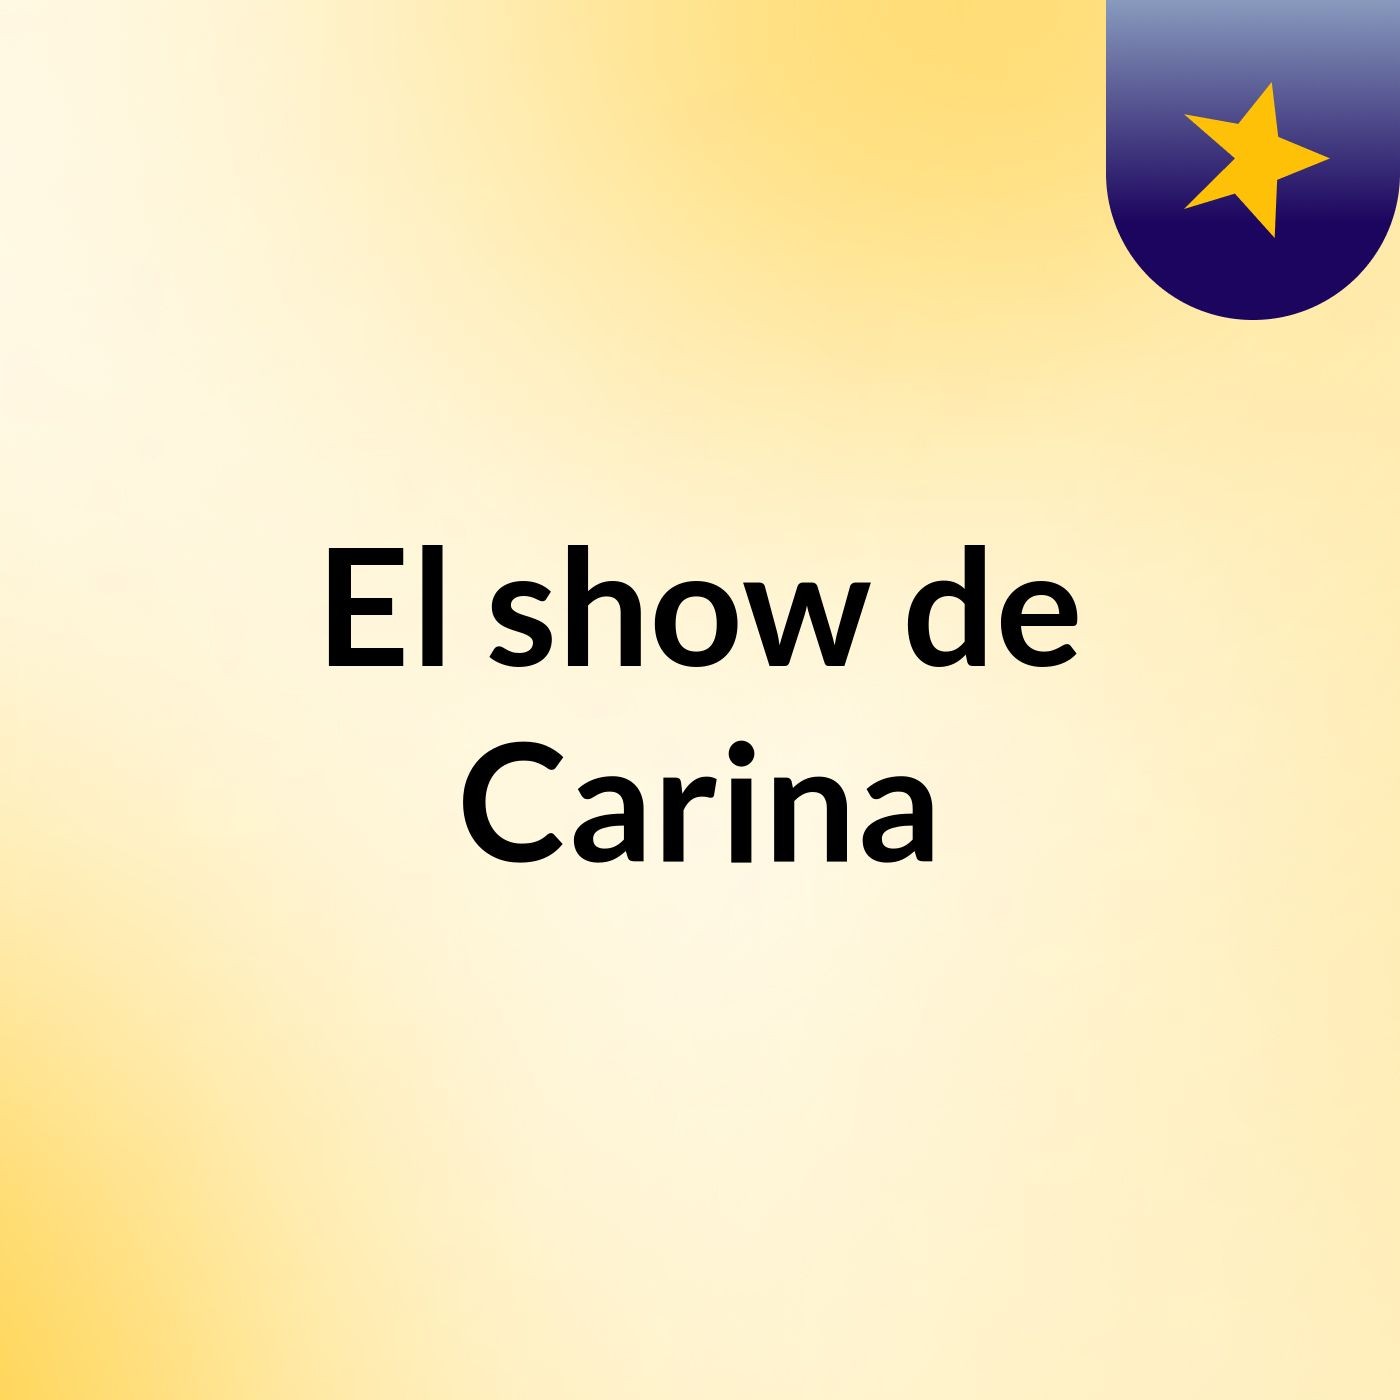 El show de Carina